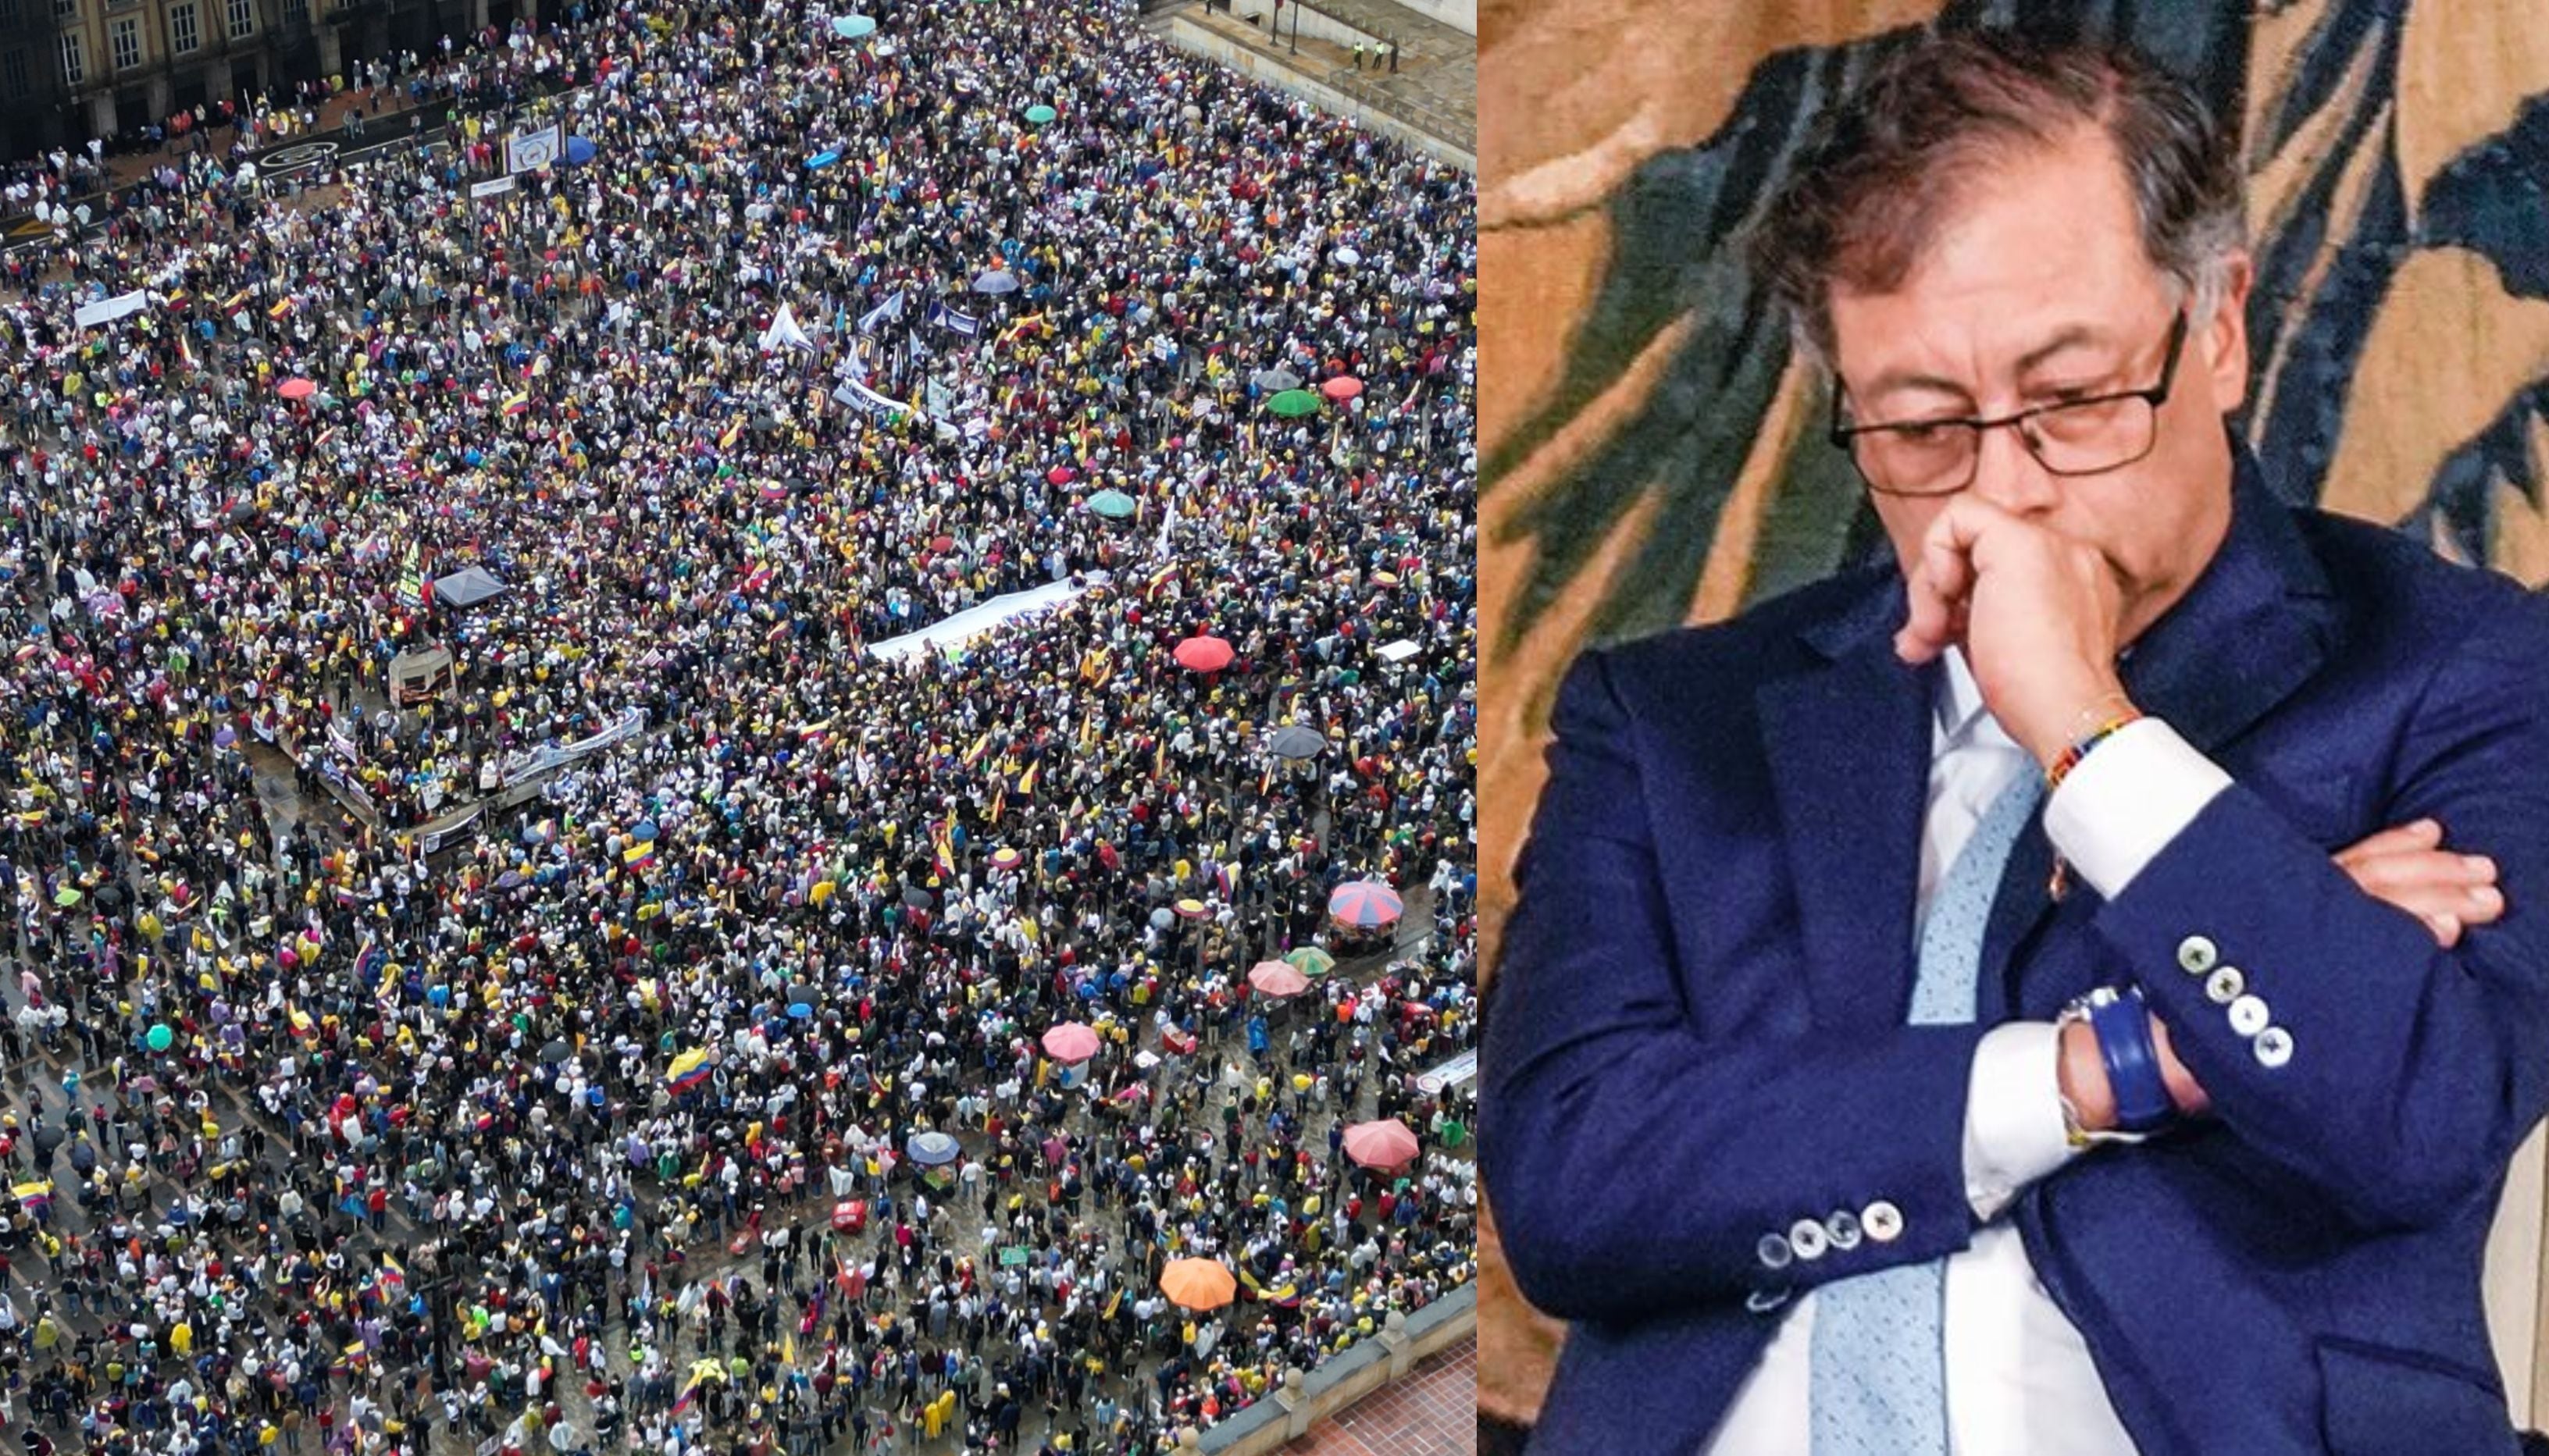 al mostrar la plaza de bolívar llena, el presidente del senado le recuerda a petro que “colombia es una república democrática”